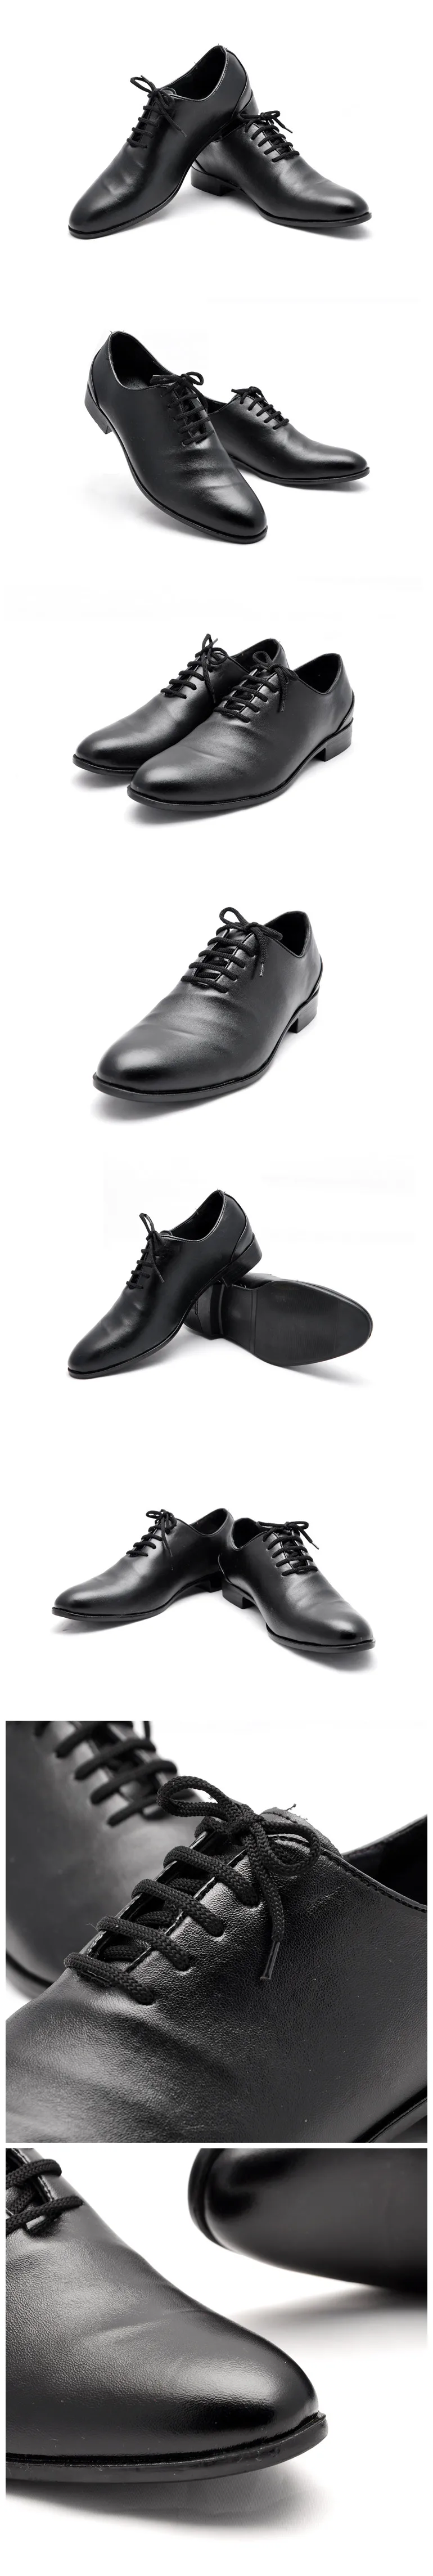 GOXPACER модная мужская обувь на плоской подошве Черный и белый цвета модные мужские повседневные кожаные мужские туфли с острым носком прилив Скейтбординг обувь